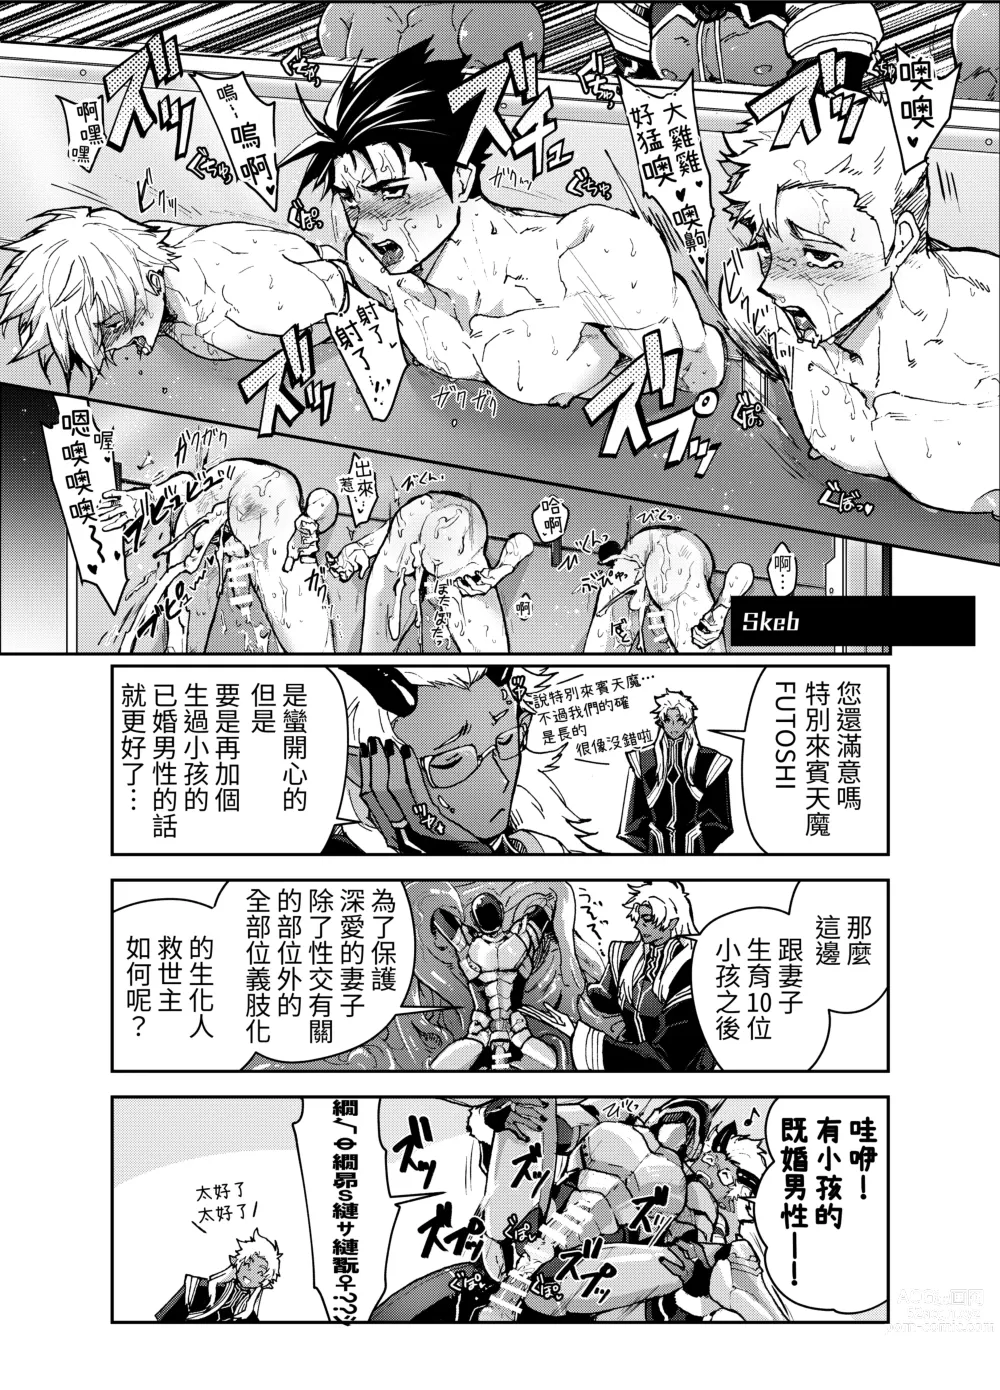 Page 25 of doujinshi Bangai